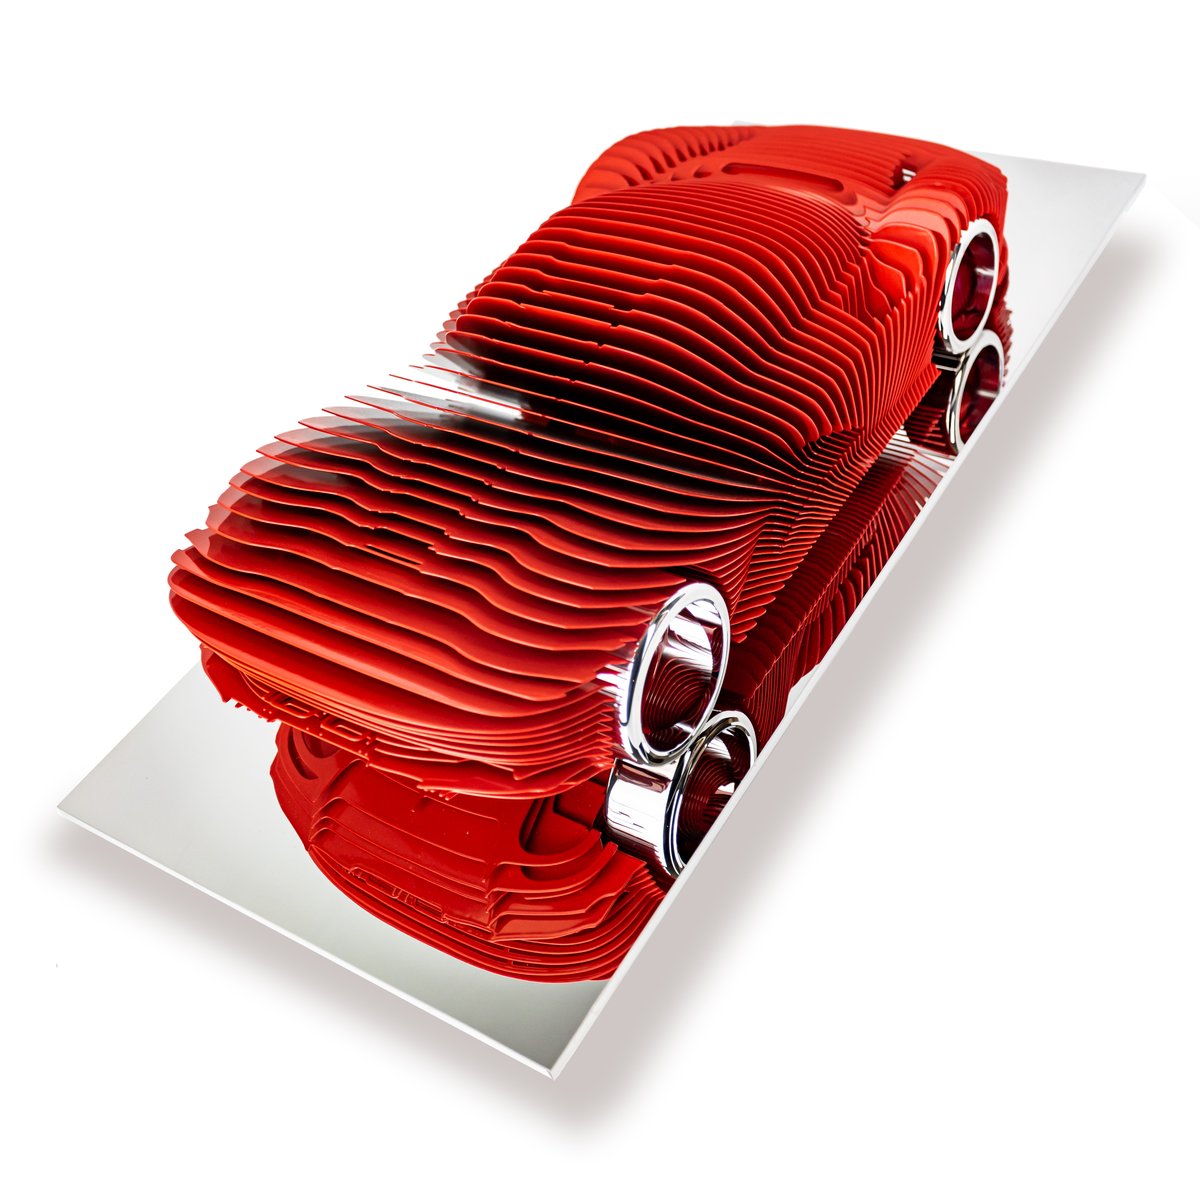 🌹Je vous présente ma nouvelle création inspirée par la meveilleuse Daytona SP3! #Ferrari #hypercar #red #sculpture # art #artist #contemporaryart #metalsculpture #bladesculpture #luxury #sculpteur #madeofsteel #daytonasp3